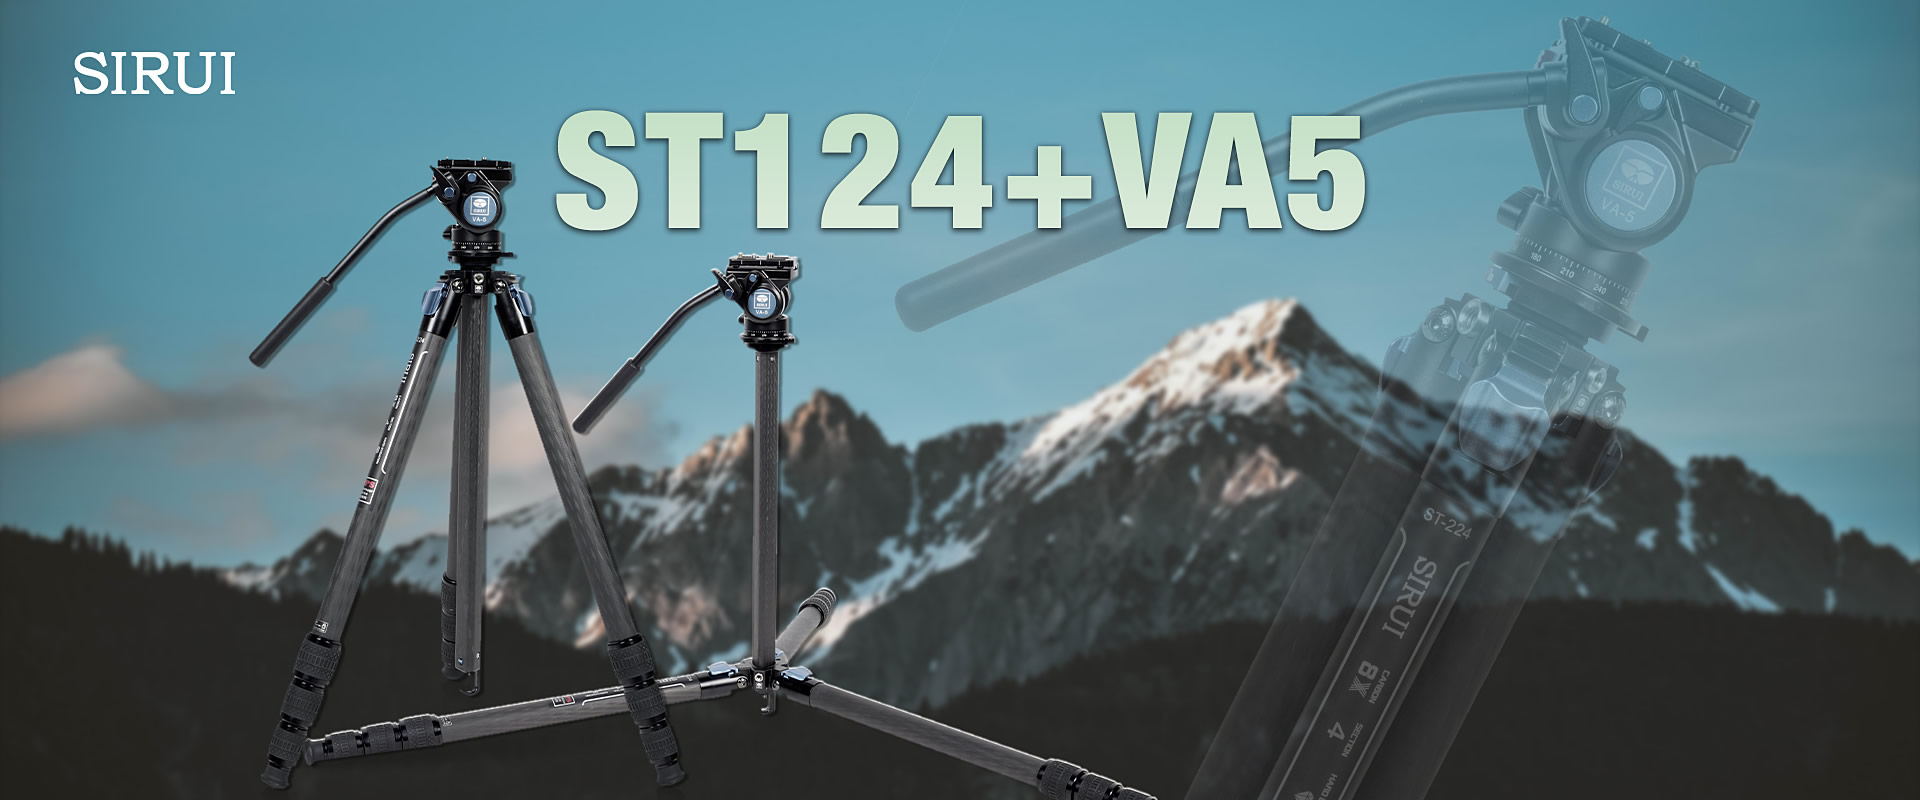 ST124+VA5